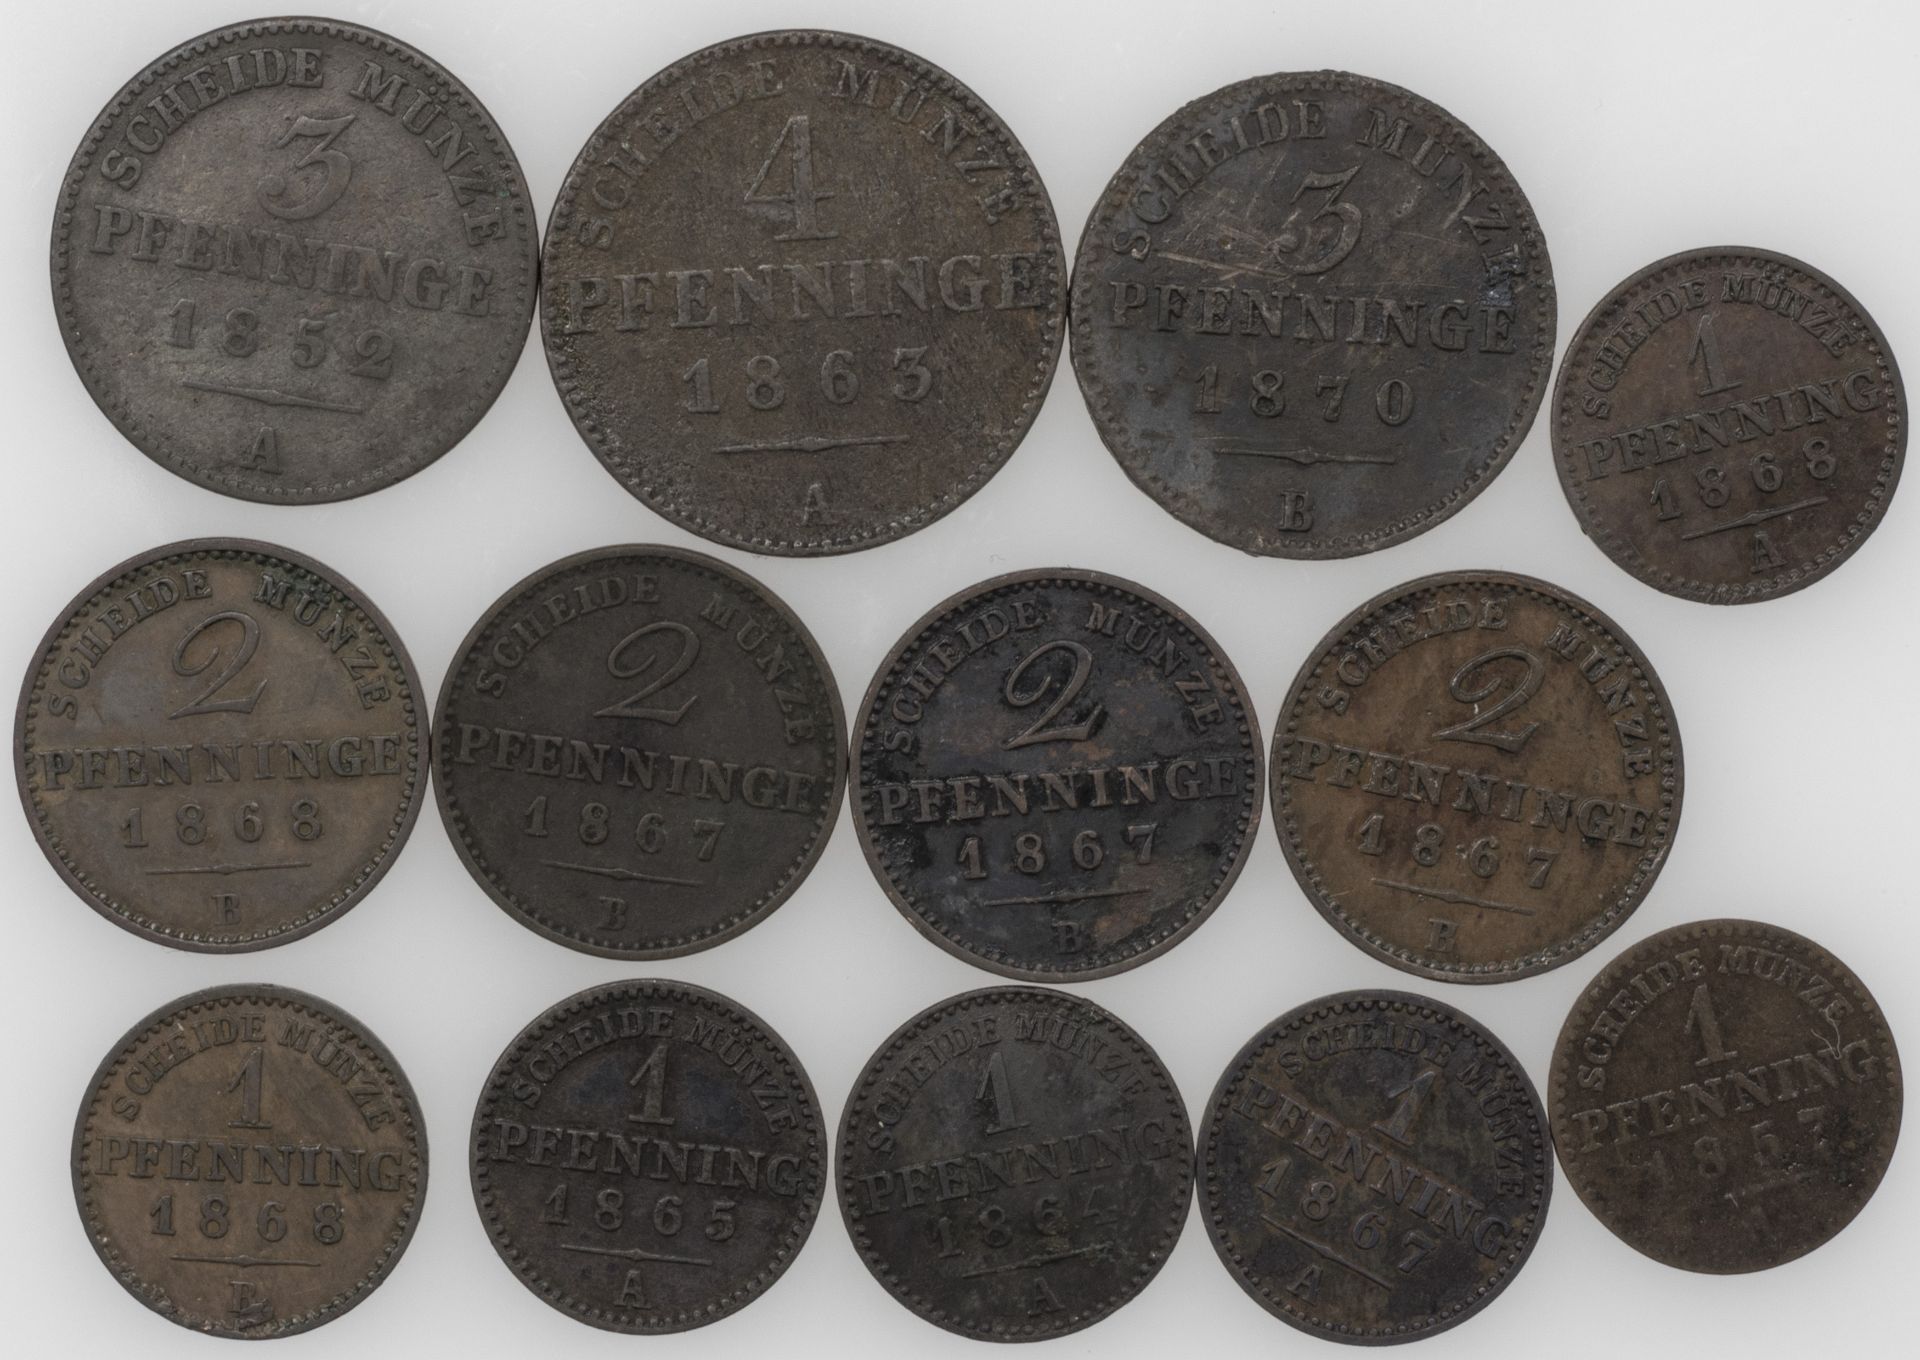 Altdeutschland Preußen 1852/70, Lot 1 Pf, 2 Pf, 3 Pf. und 4 Pfennig - Münzen. Erhaltung: ss.